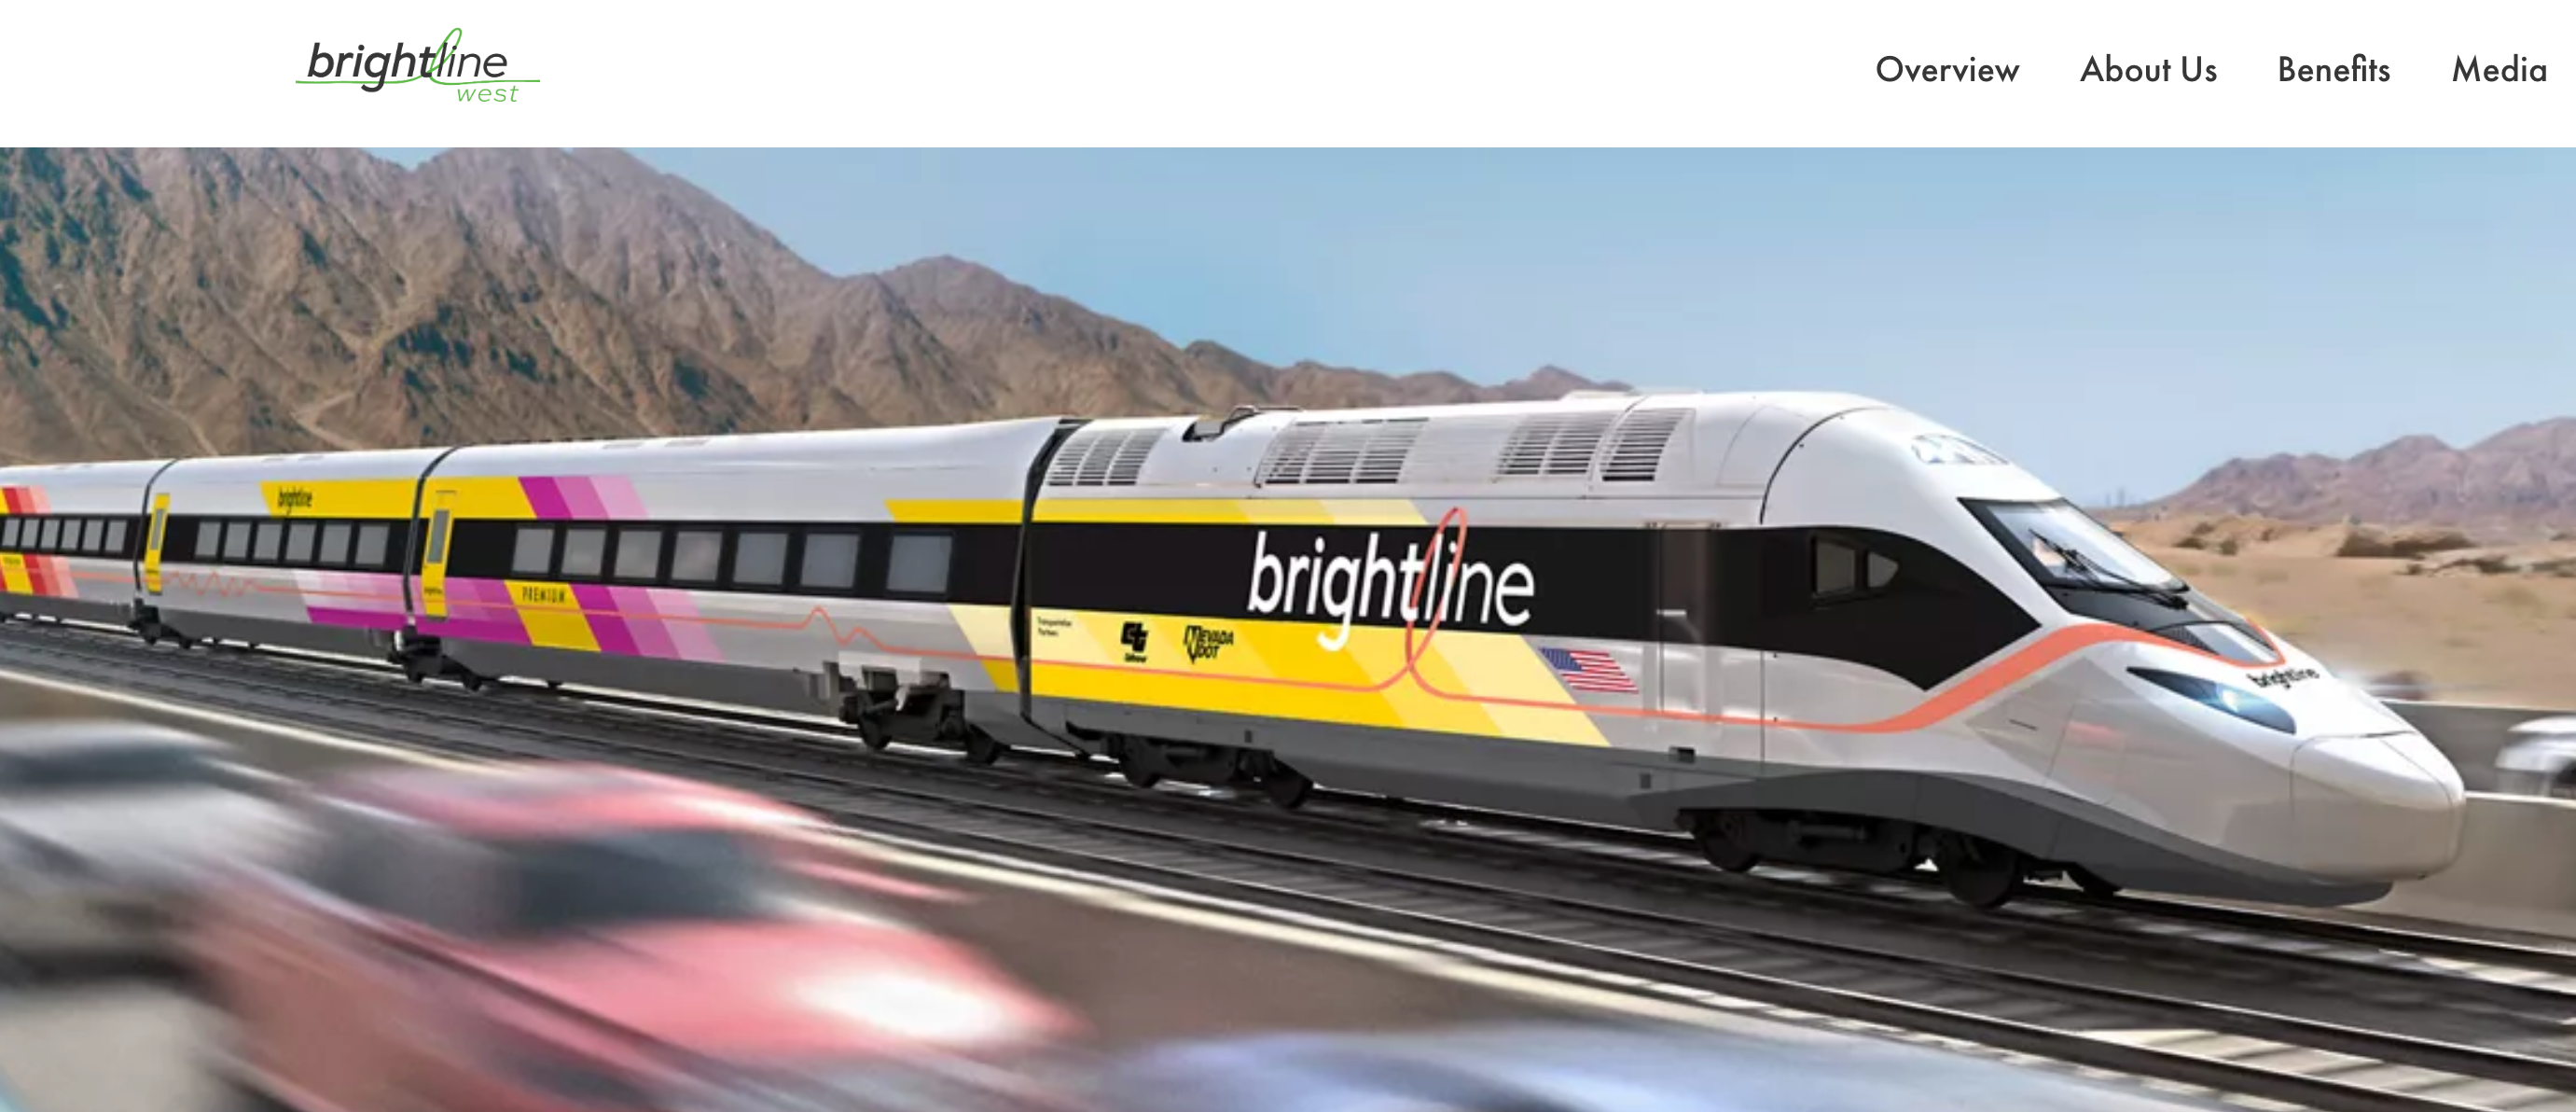 Rendering of proposed high-speed train between Las Vegas and Los Angeles. BRIGHTLINE